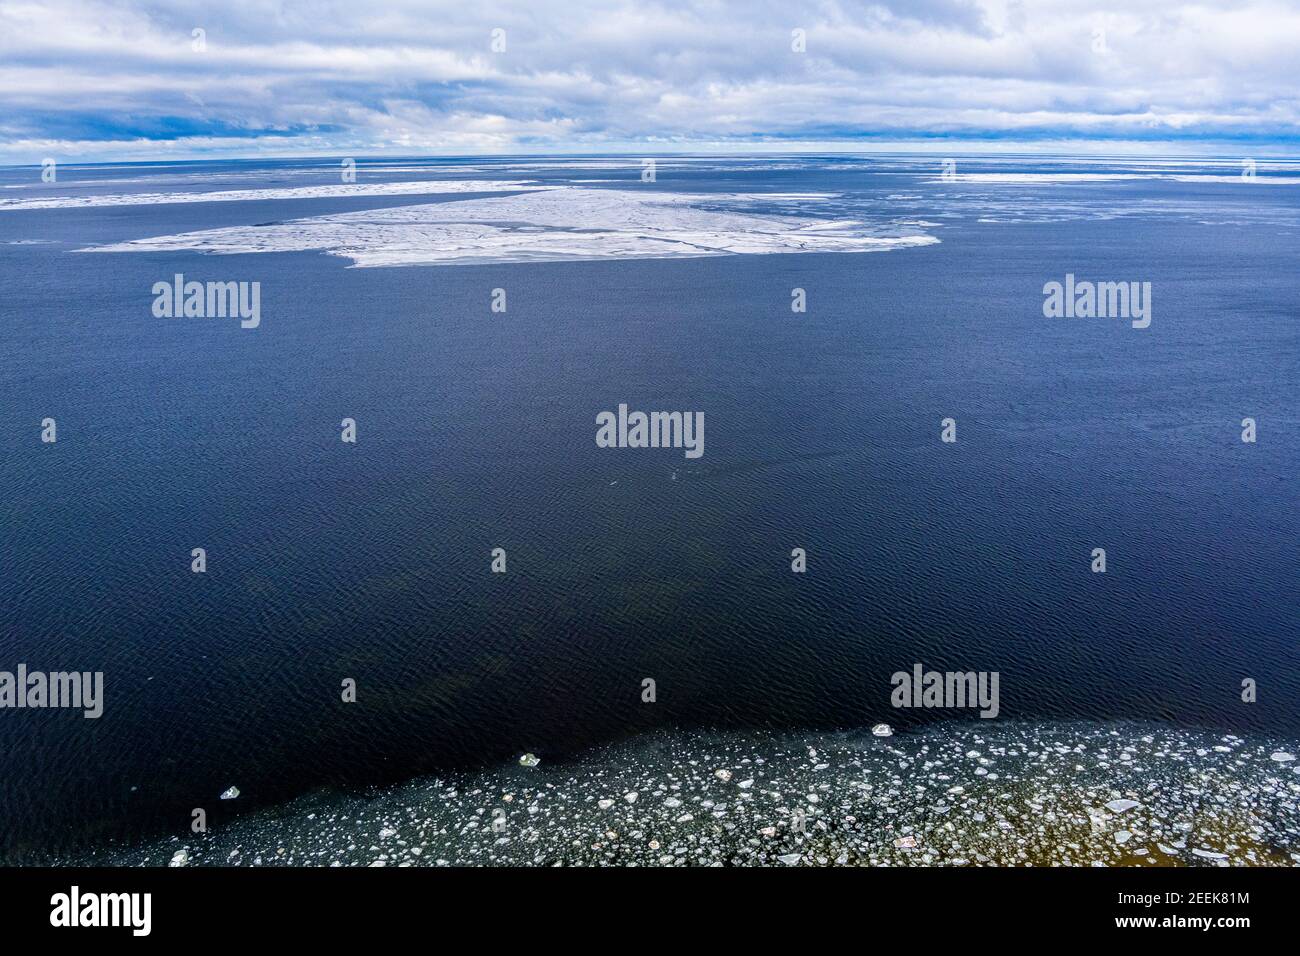 Bloques de hielo que se encuentran en un mar tranquilo creando interesantes patrones aéreos. Disparo de drone Foto de stock